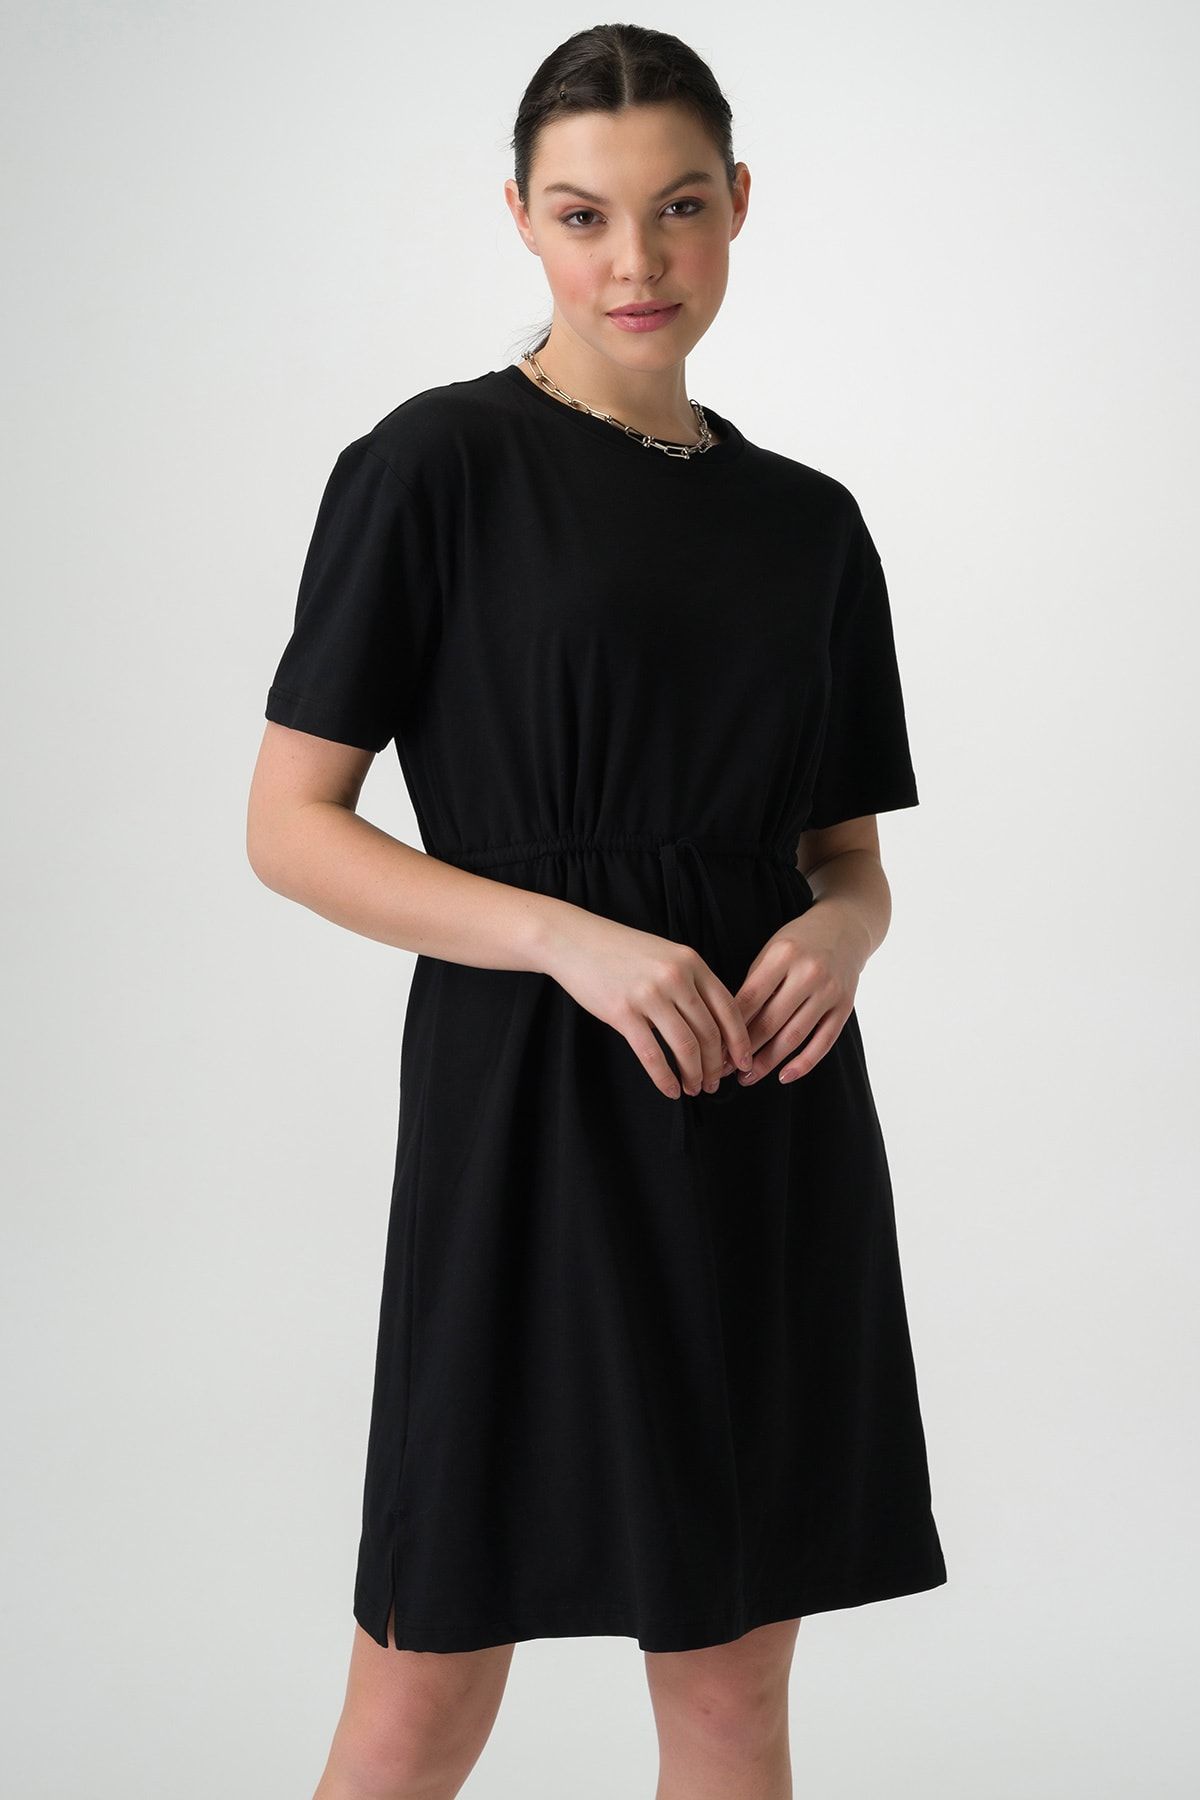 Runever Kadın Siyah Büzgü Detaylı Elbise 98100